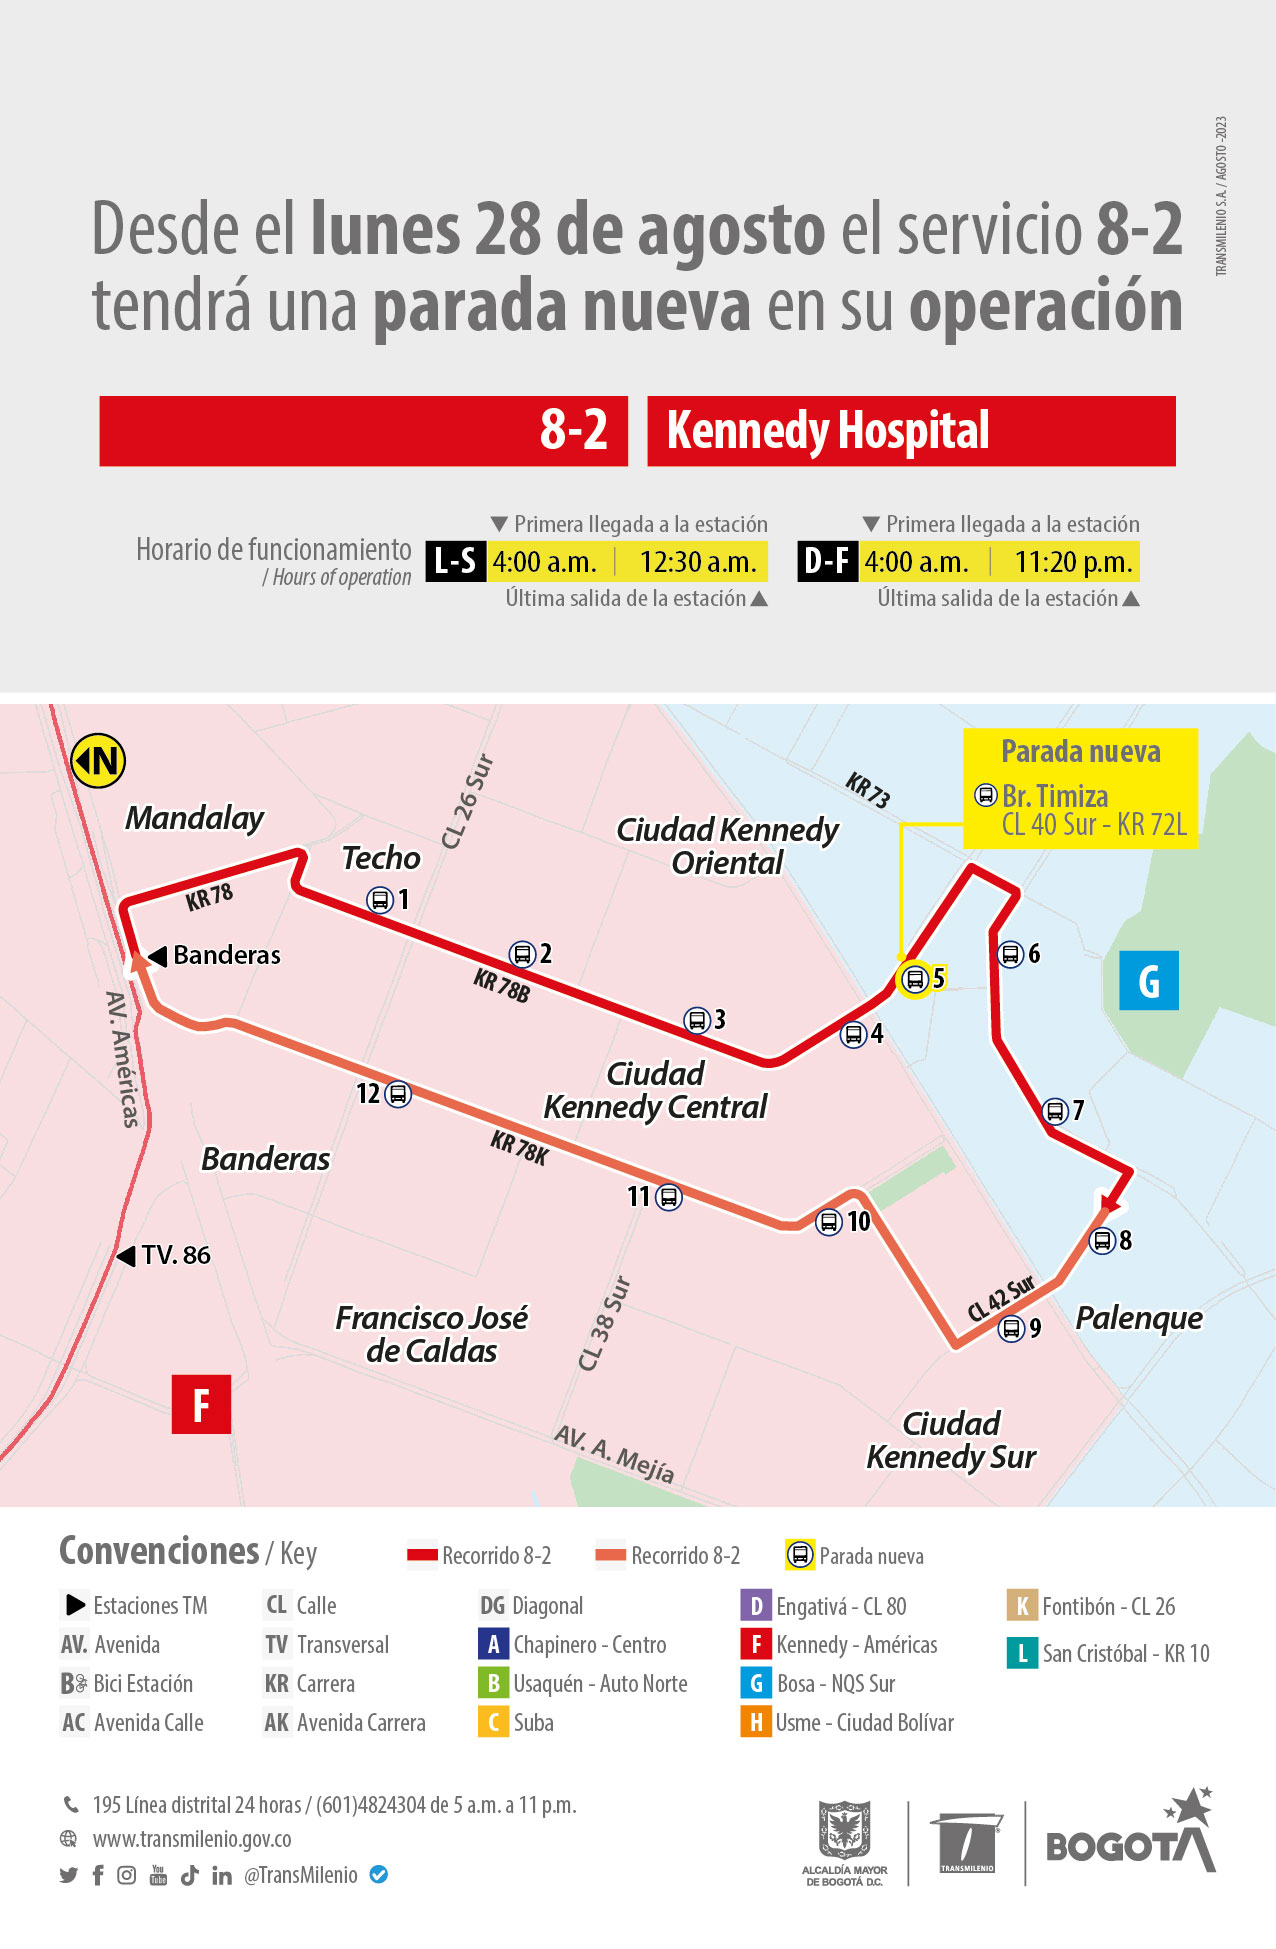 8-2 Kennedy Hospital